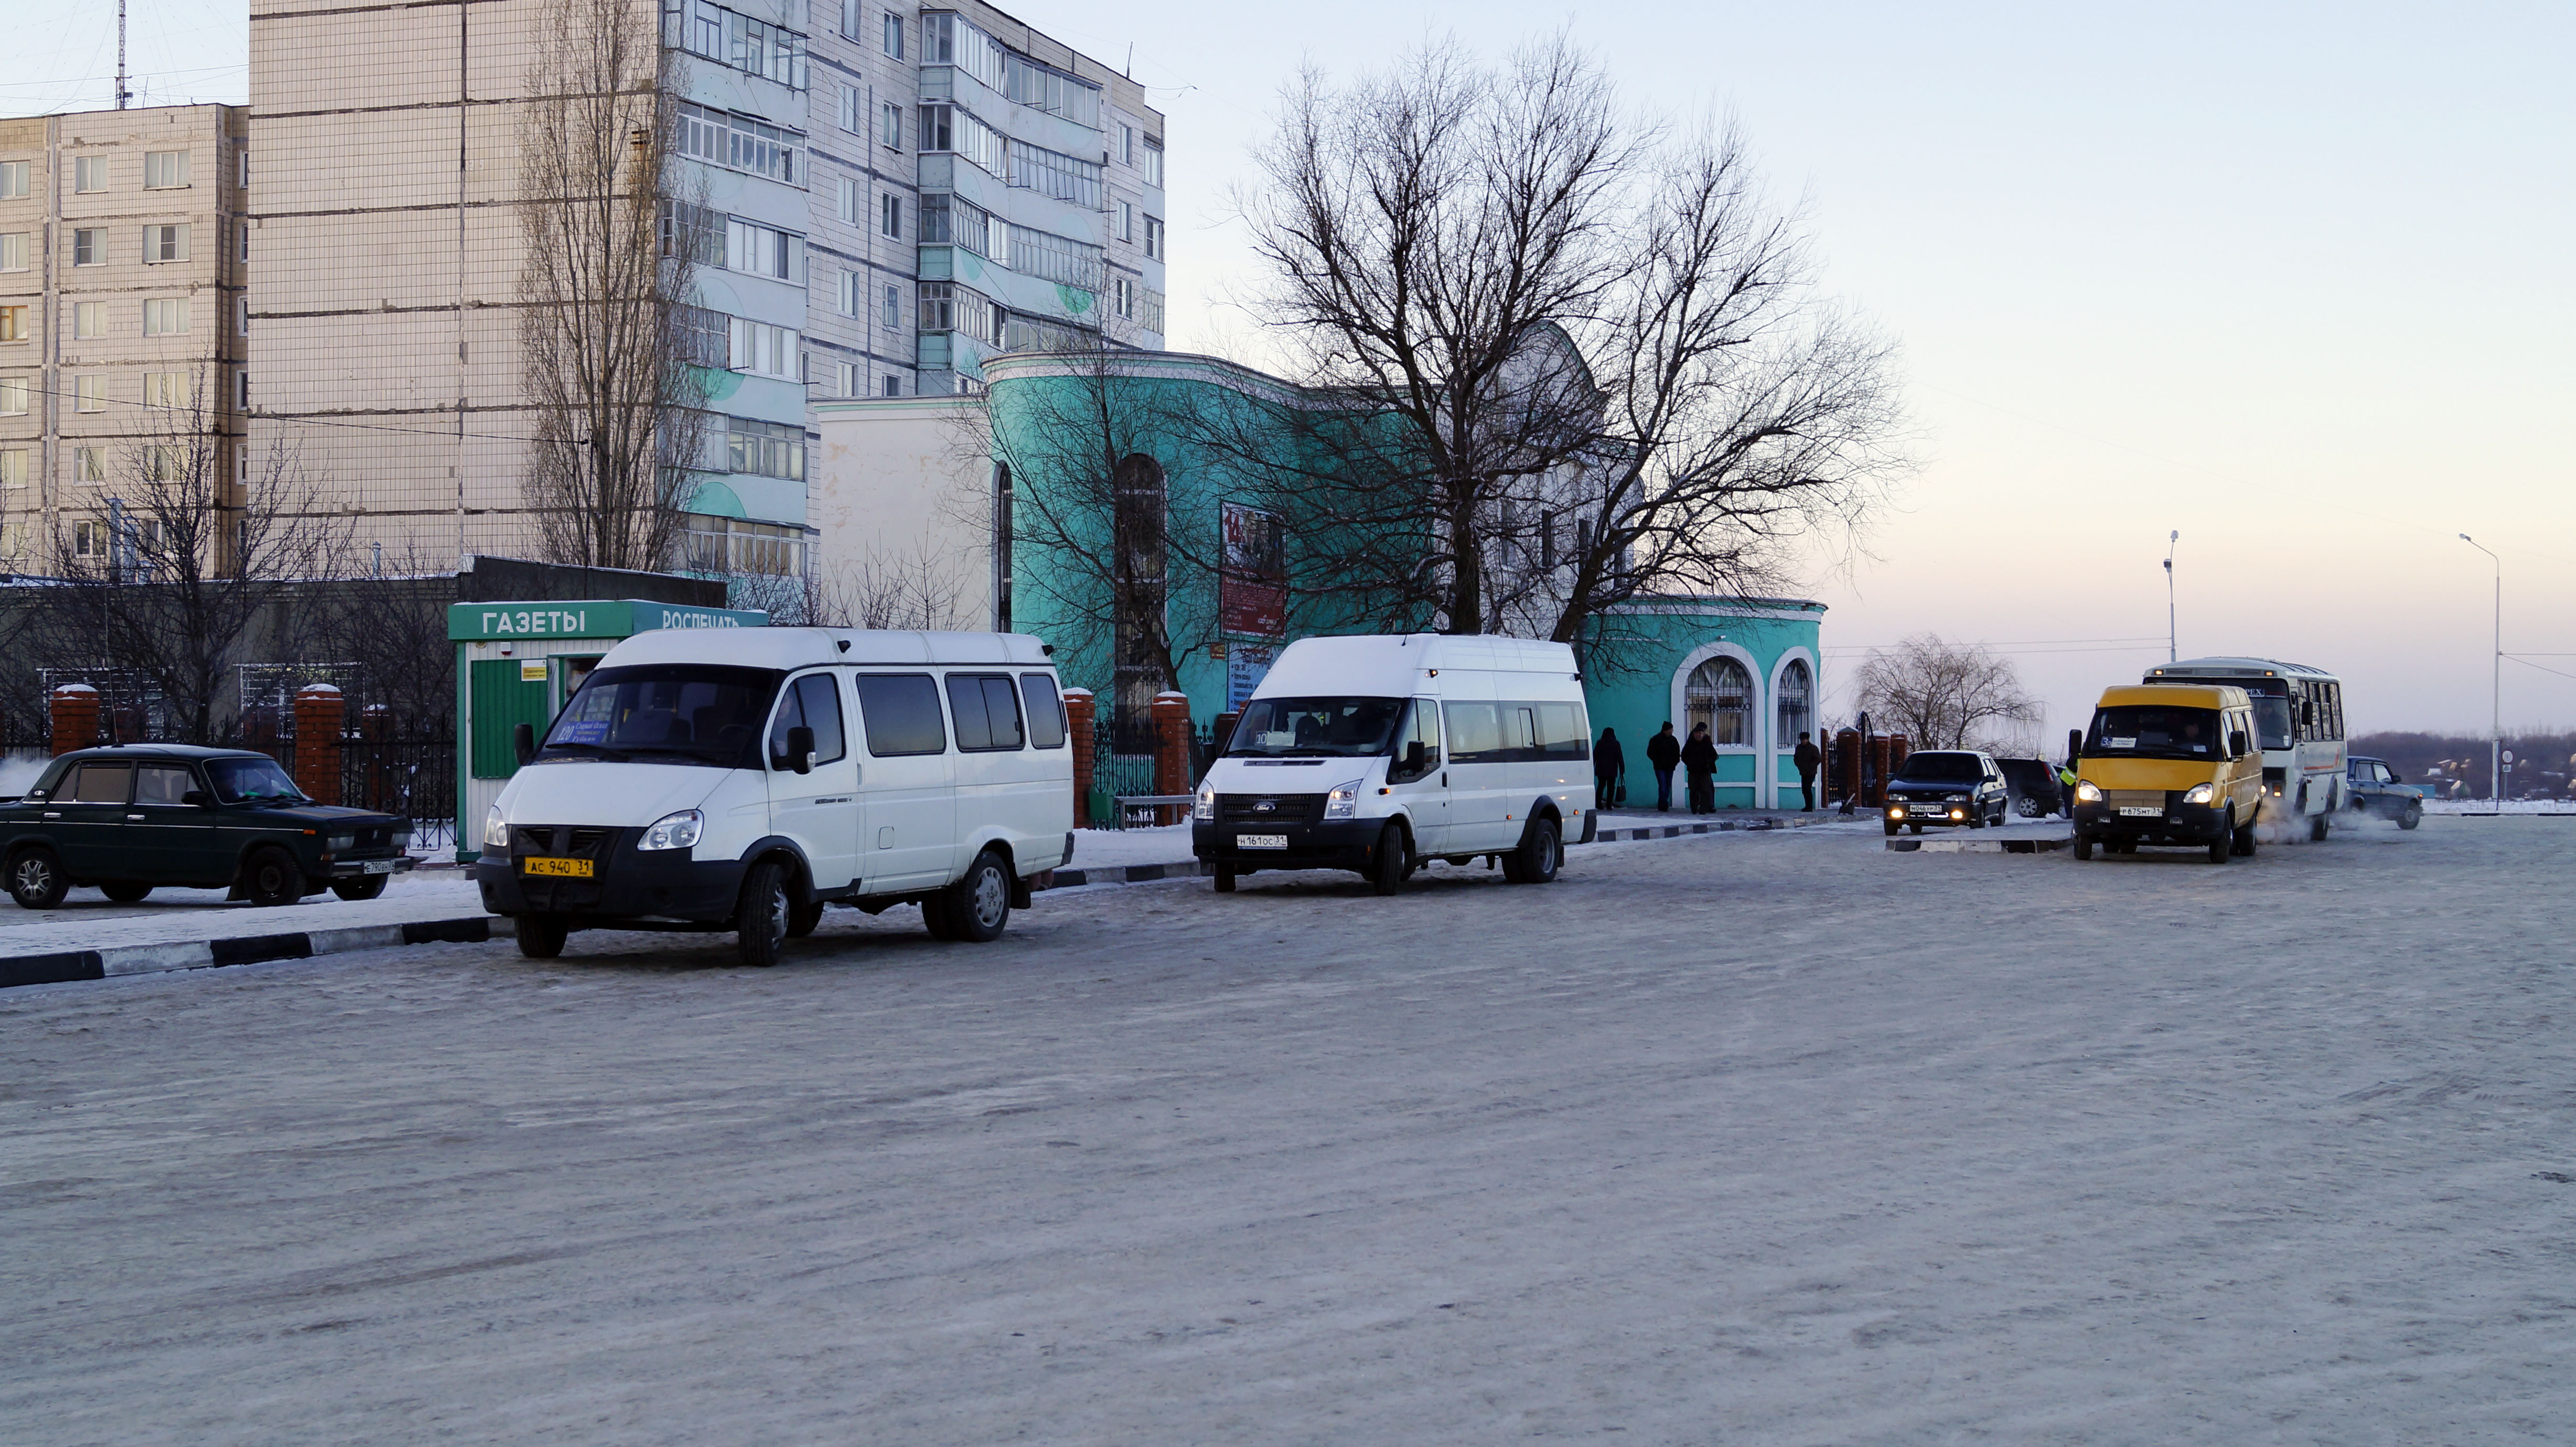 Организованы рейсы автобусного маршрута № 5 через мкр. Йотовка